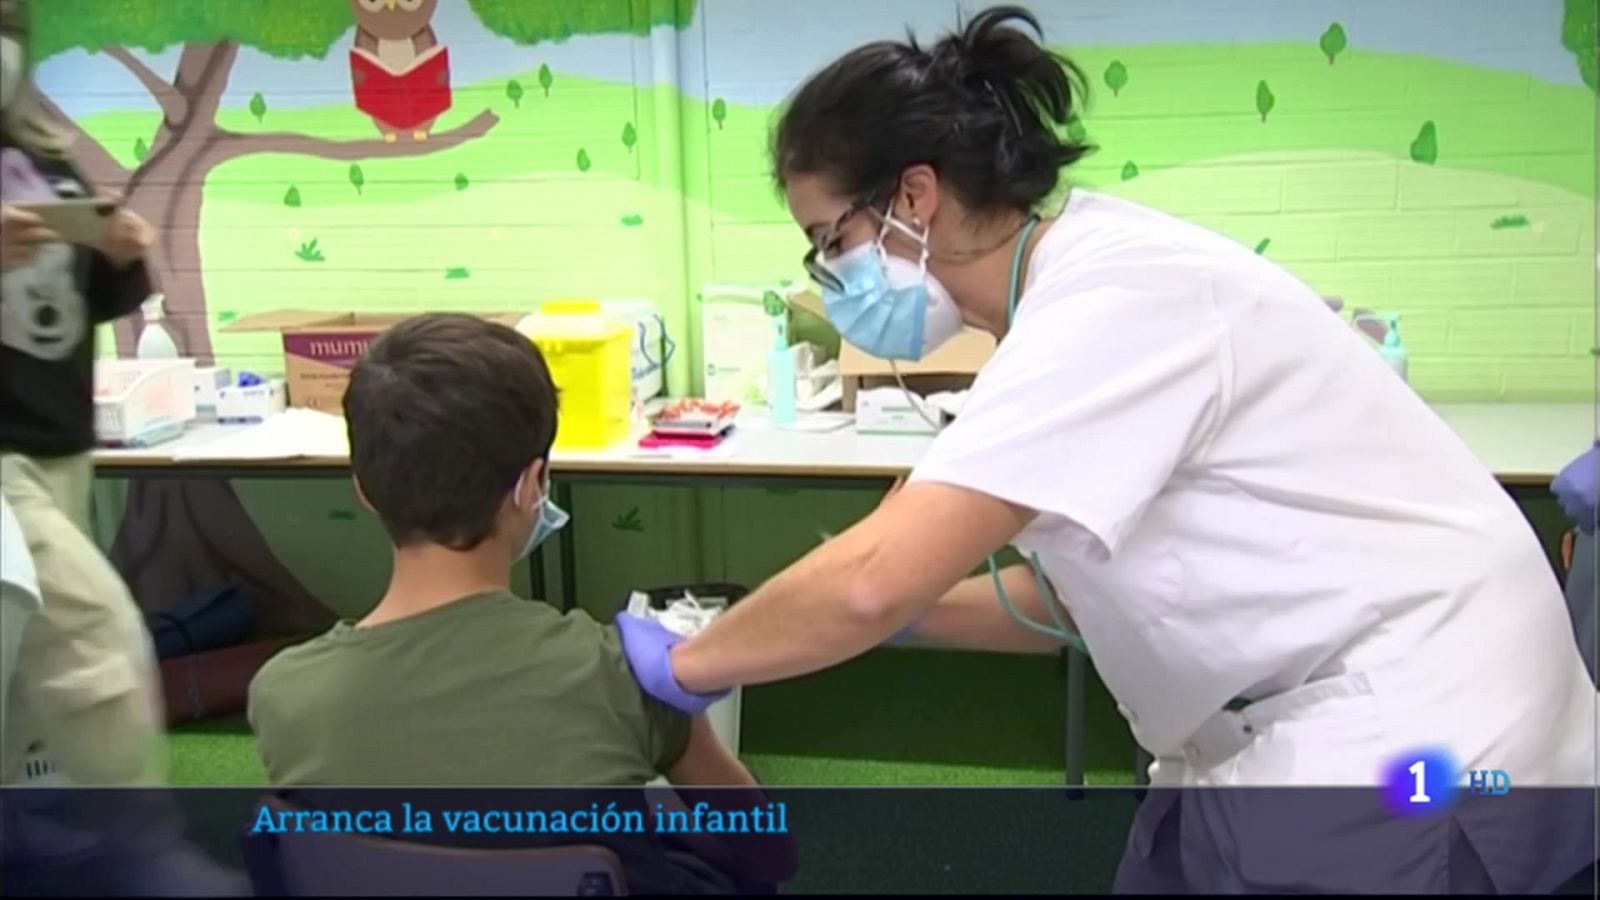 Arranca la vacunación infantil